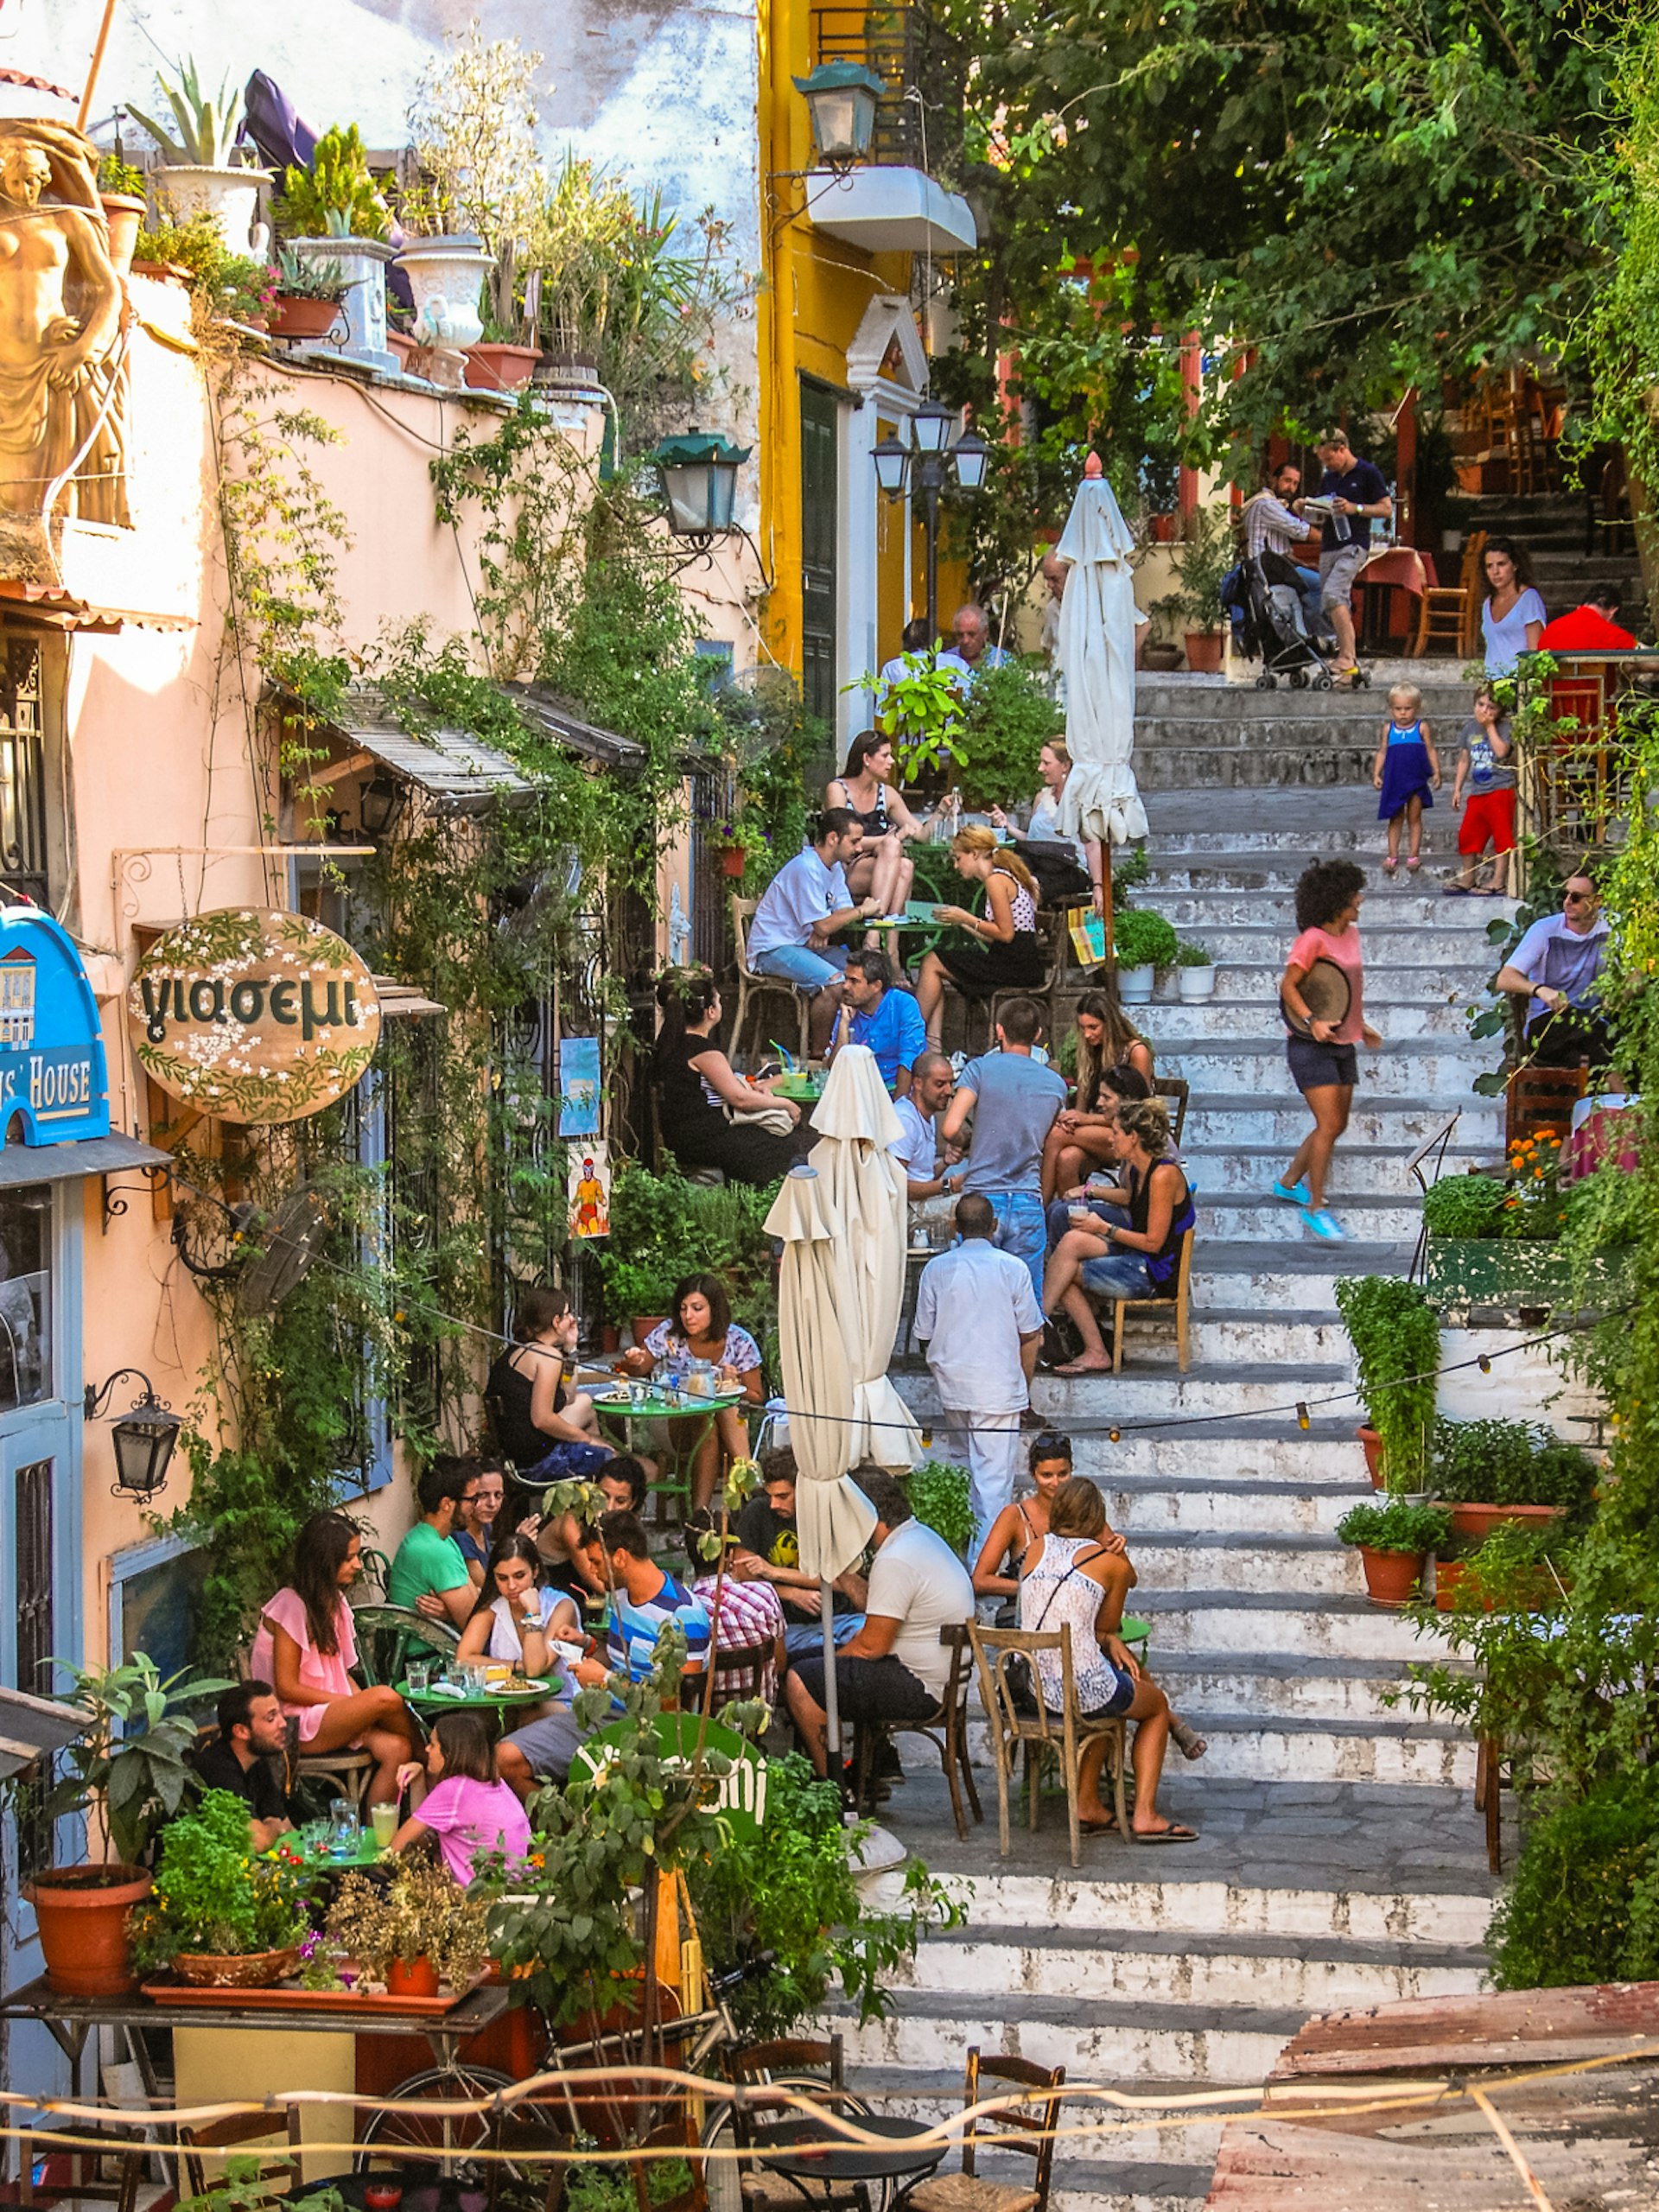 Al fresco dining in Athens' Plaka neighbourhood © T.Slack / Shutterstock